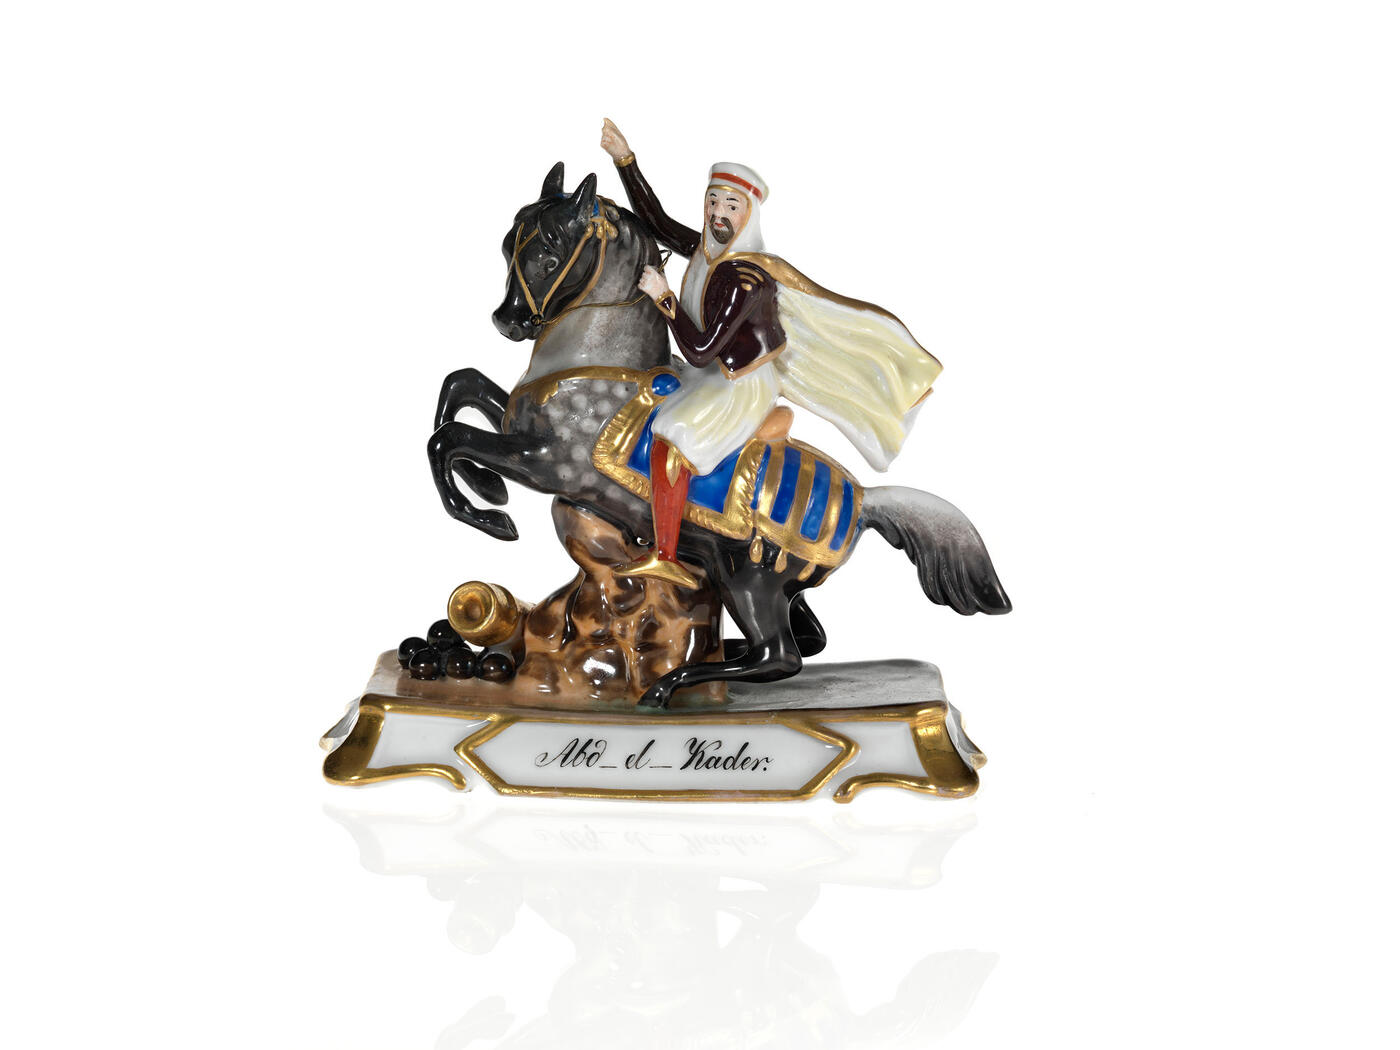 A Porcelain Figurine of Emir Abdelkader on a Horse